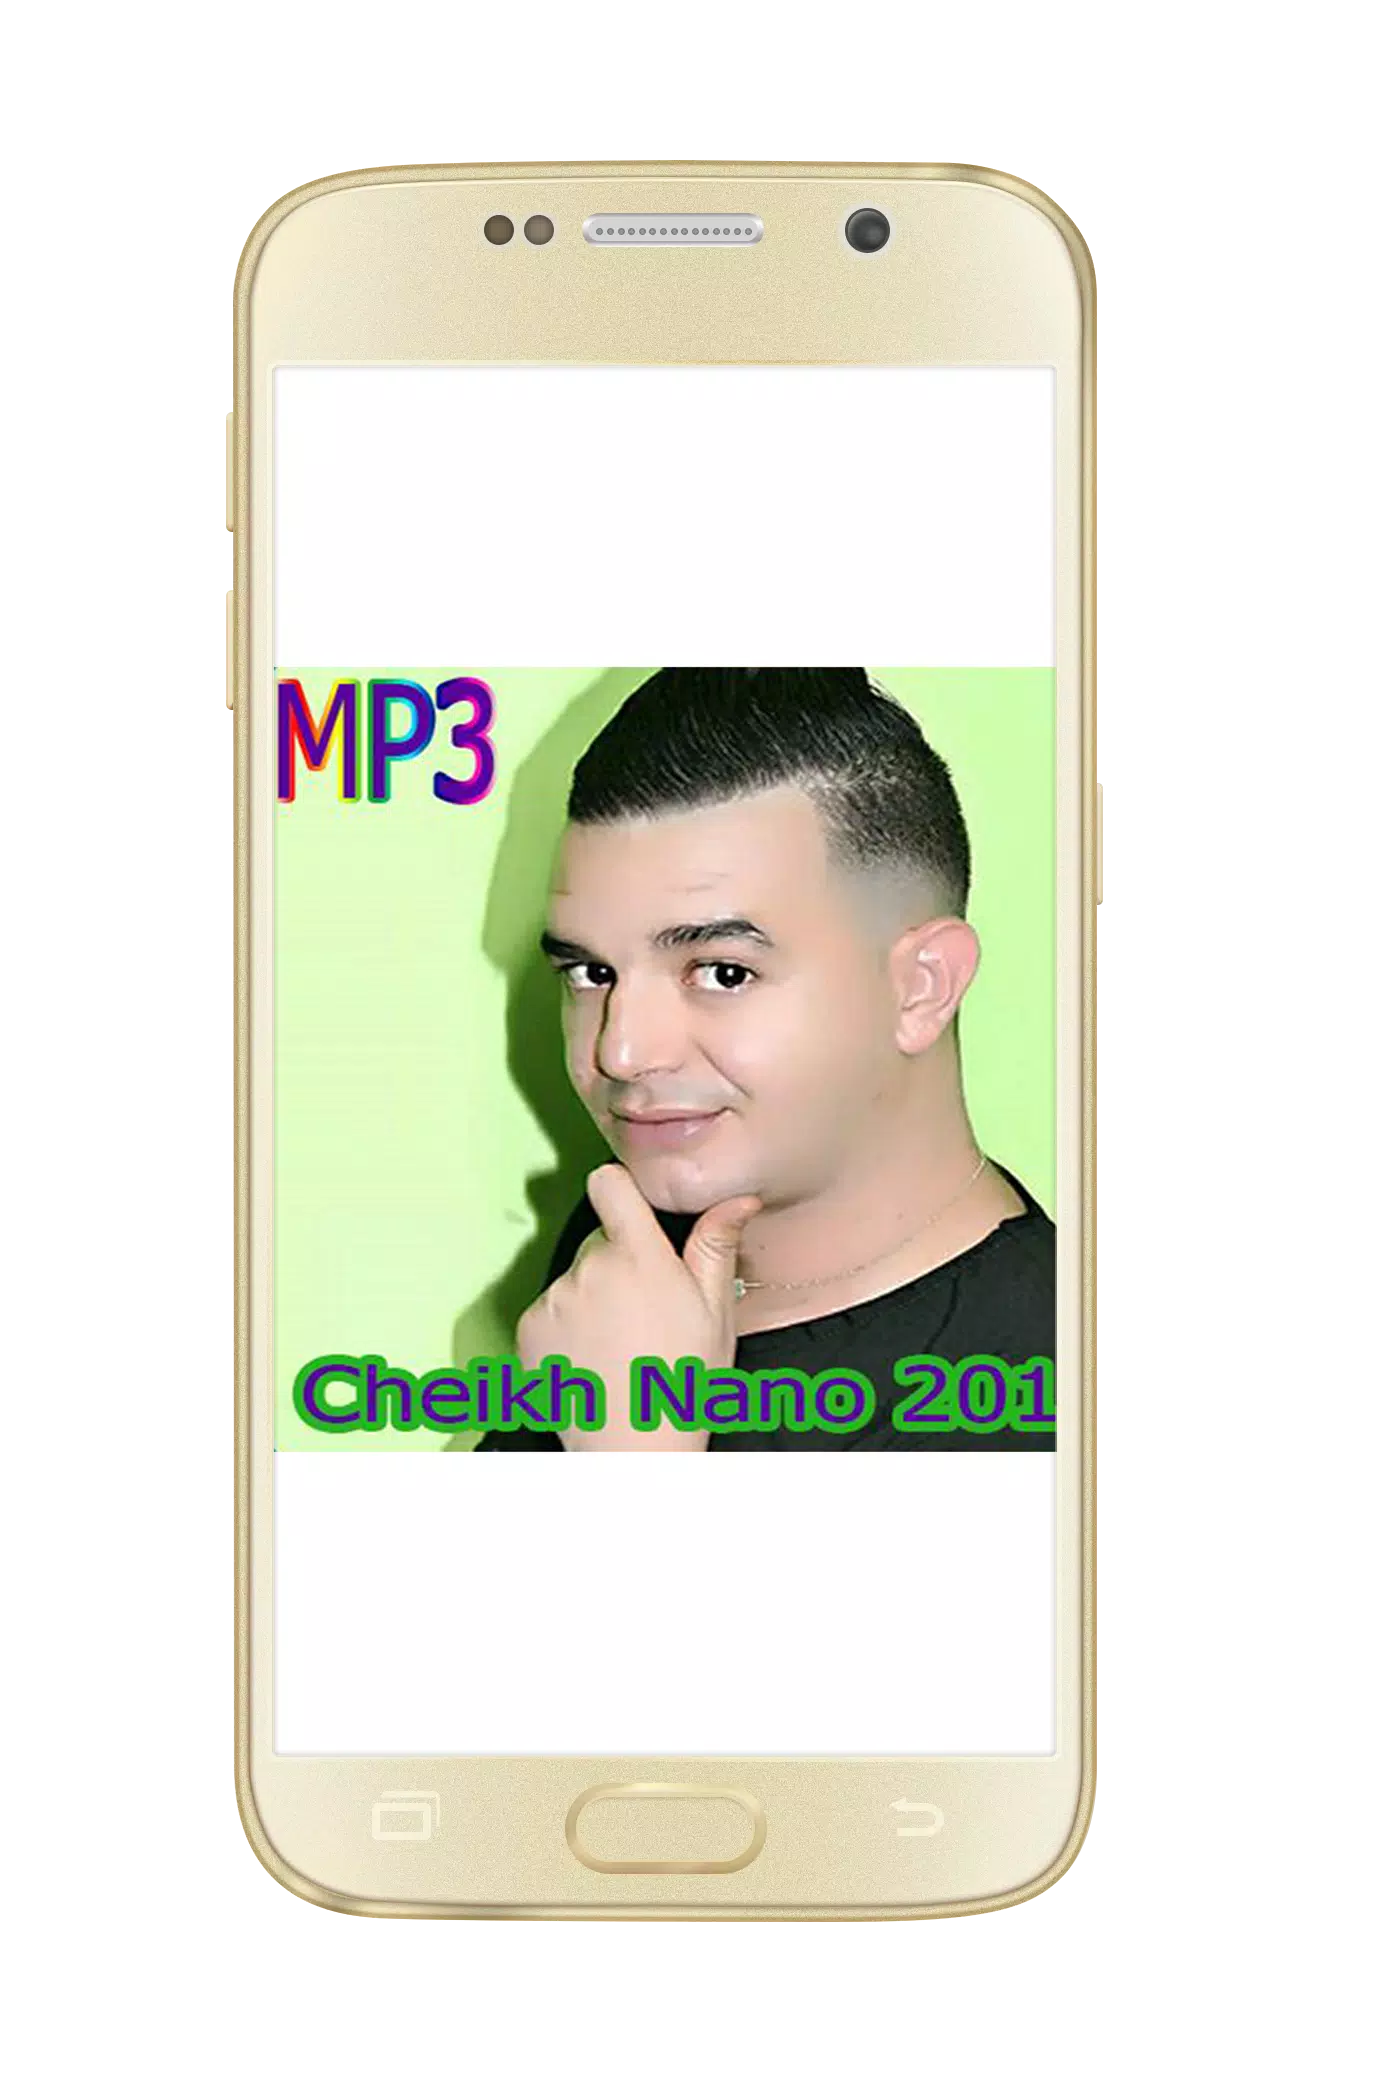 اغاني الشيخ نانو mp3 APK pour Android Télécharger